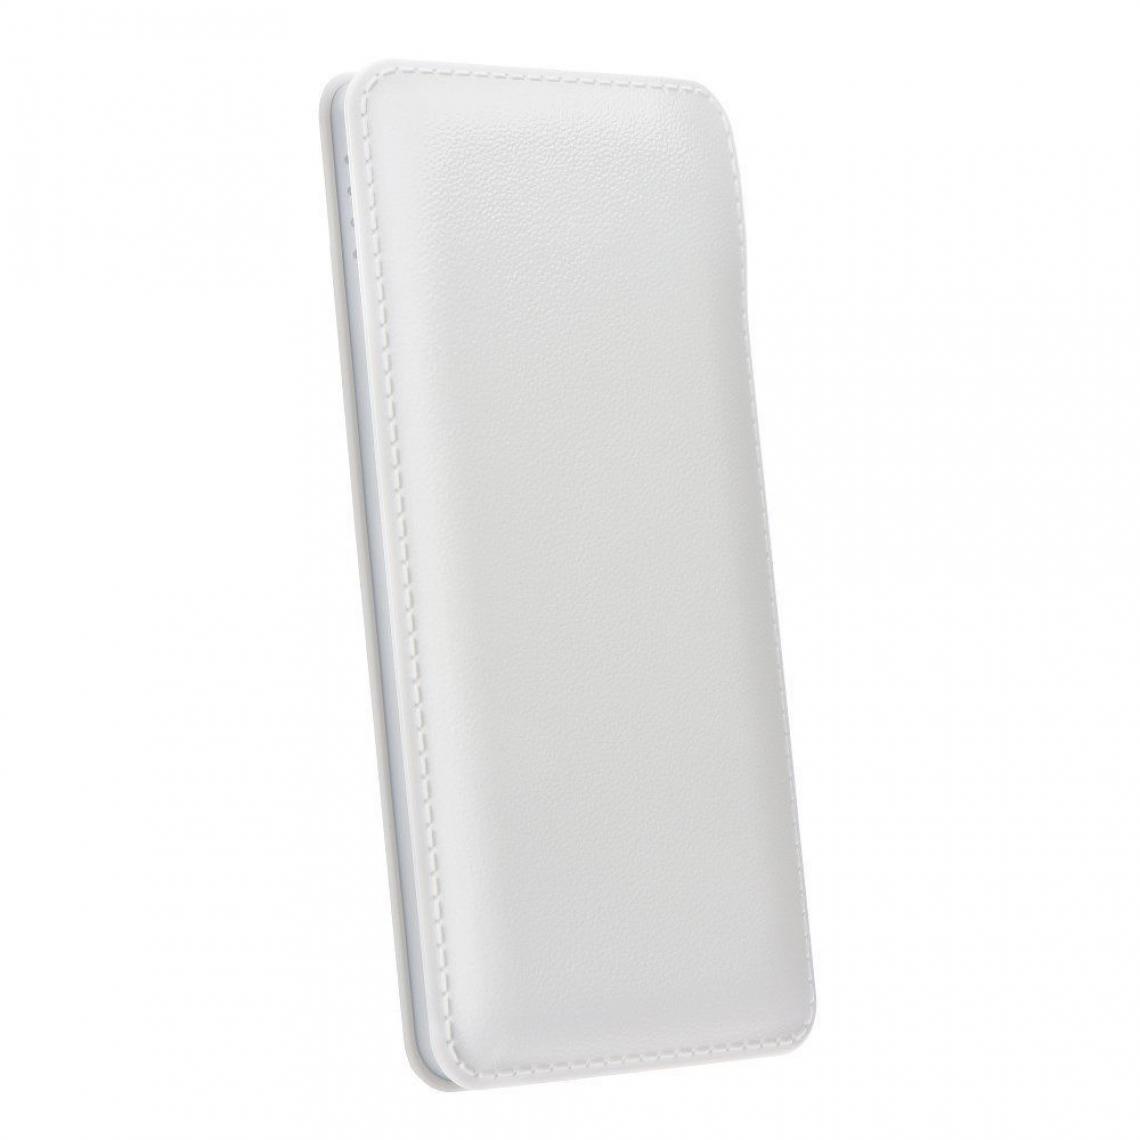 Ozzzo - Chargeur batterie externe 20000 mAh powerbank ozzzo blanc pour LG W10 - Autres accessoires smartphone